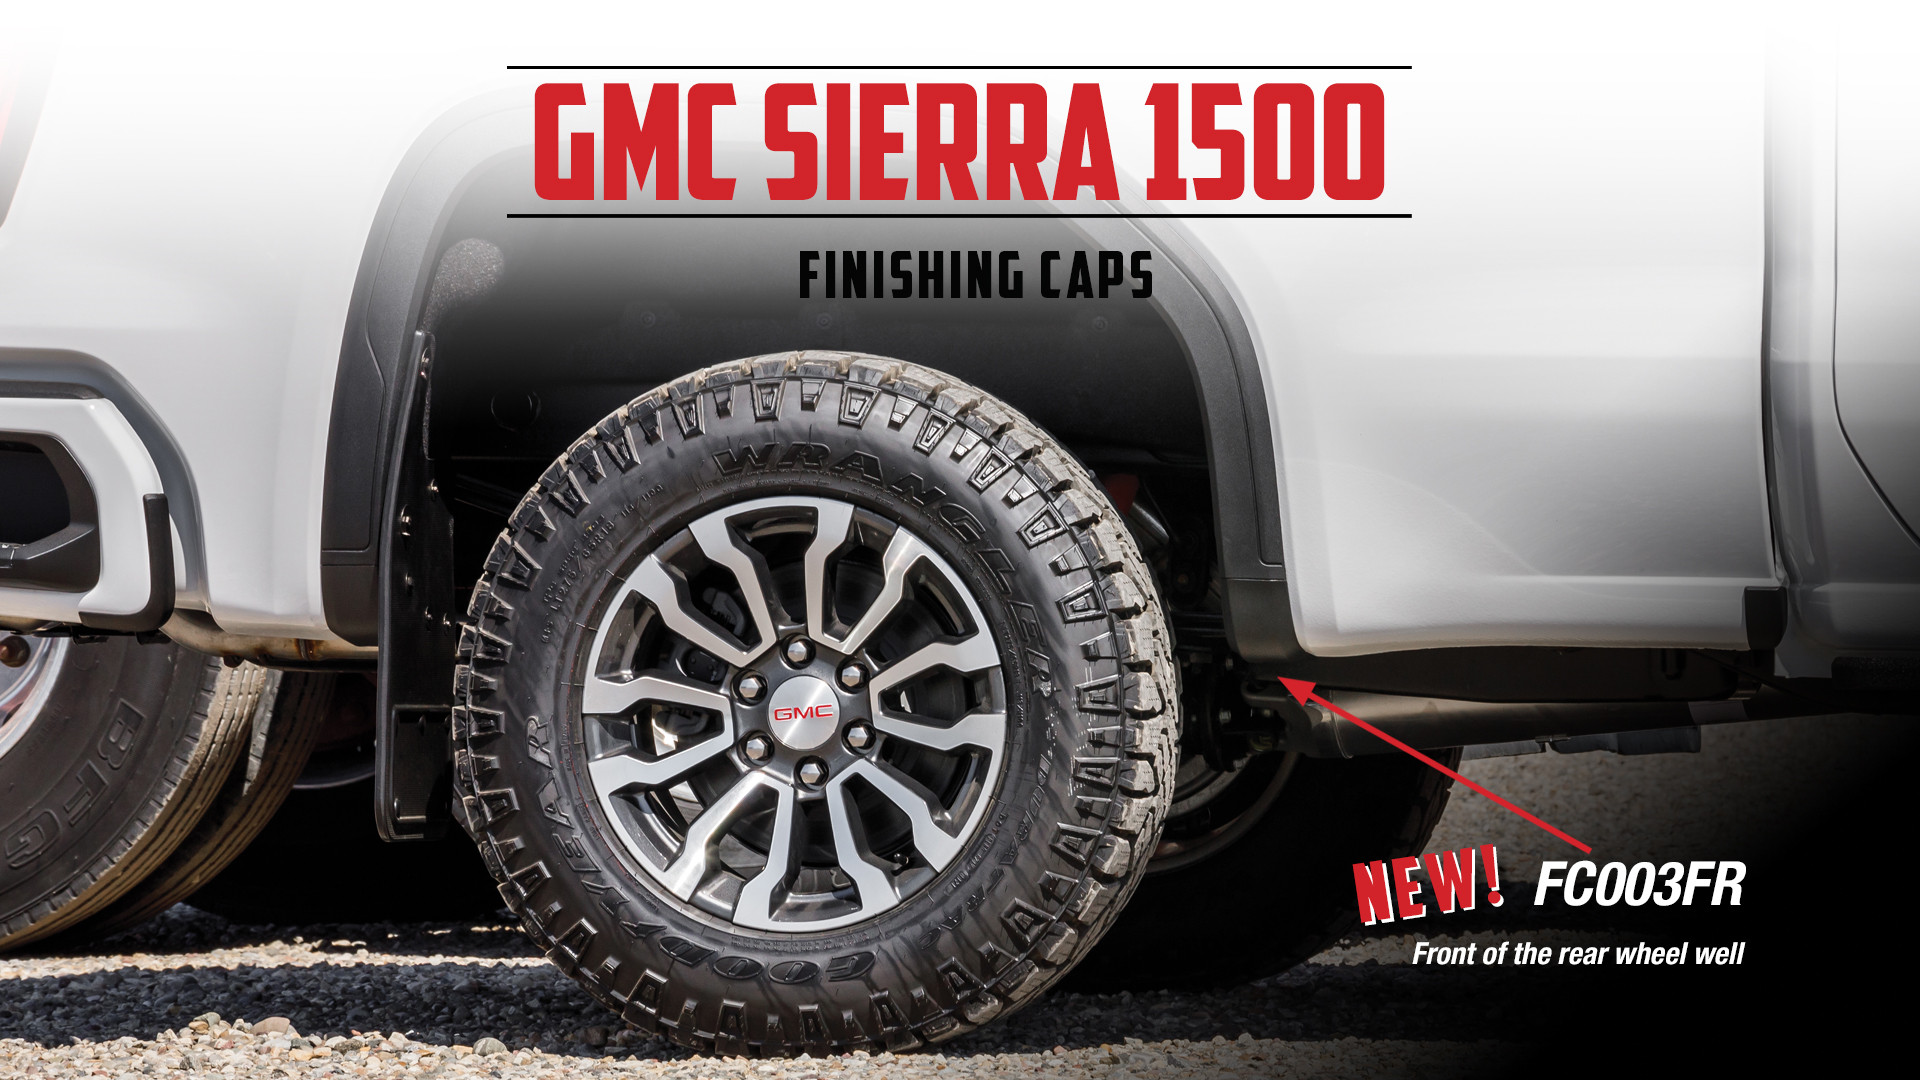 2021 GMC Sierra 1500 Finishing Caps - Rear Front